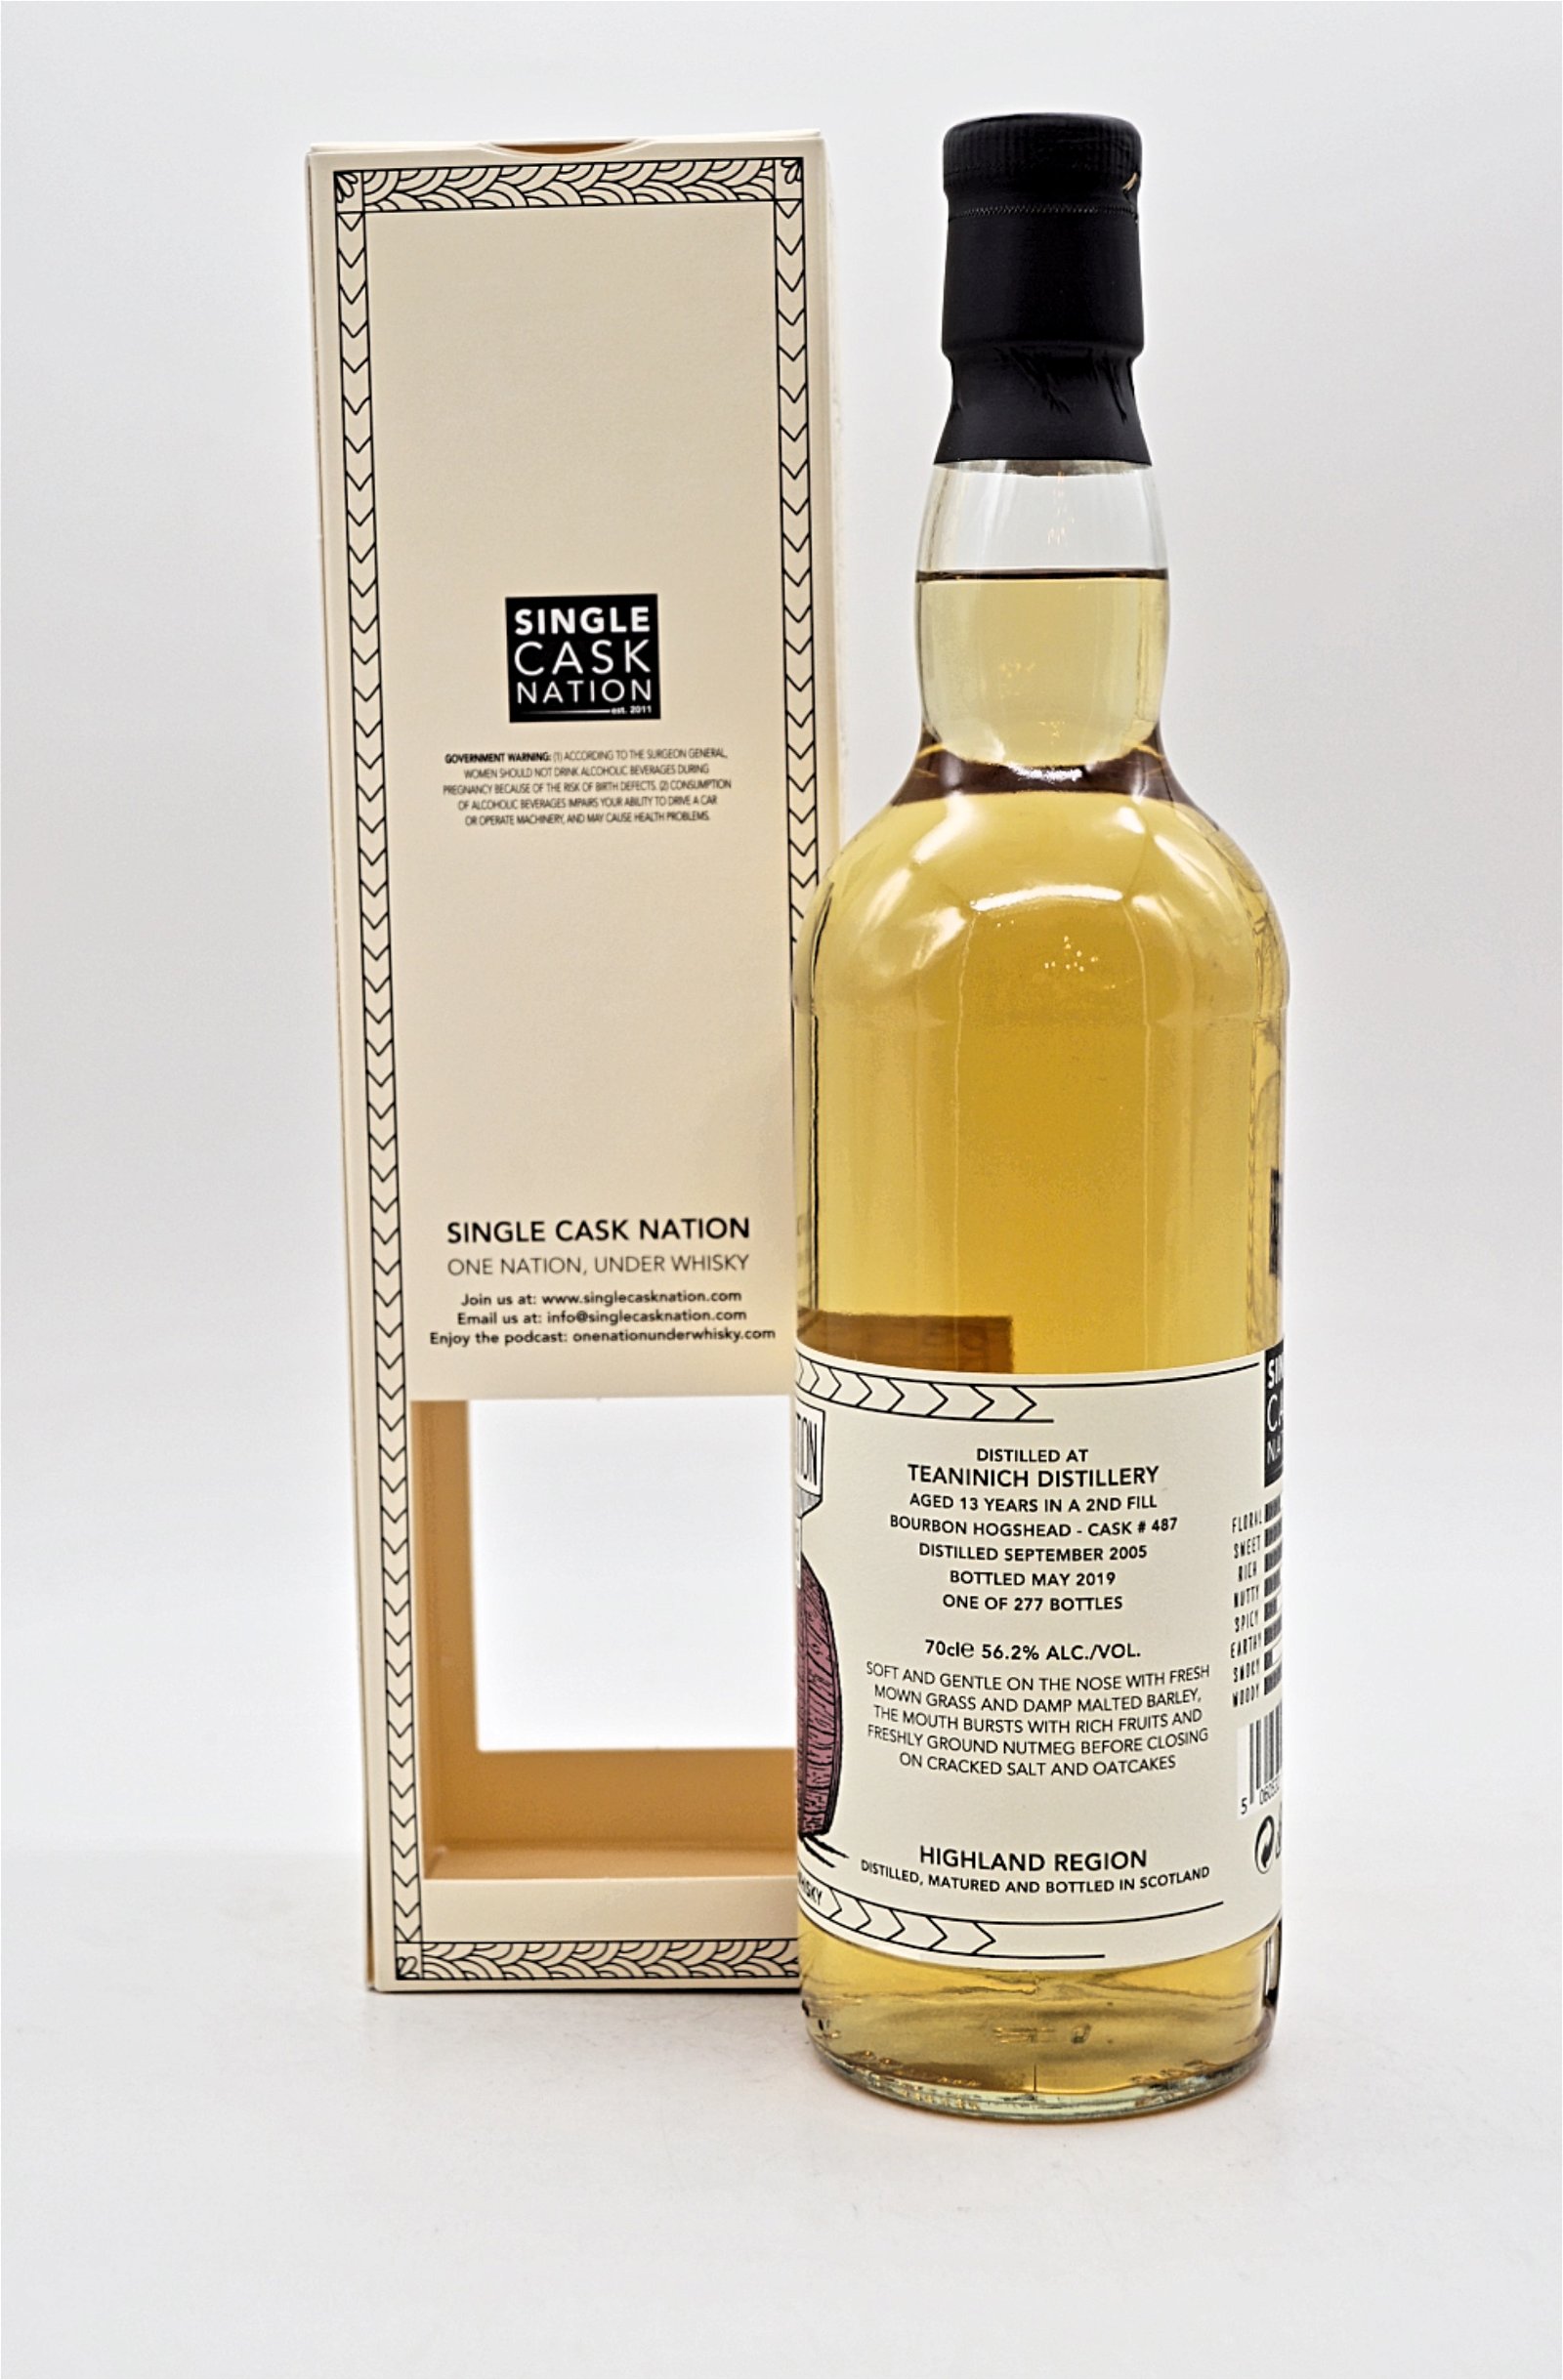 Single Cask Nation 13 Jahre Teaninich Cask #487 Single Malt Scotch Whisky